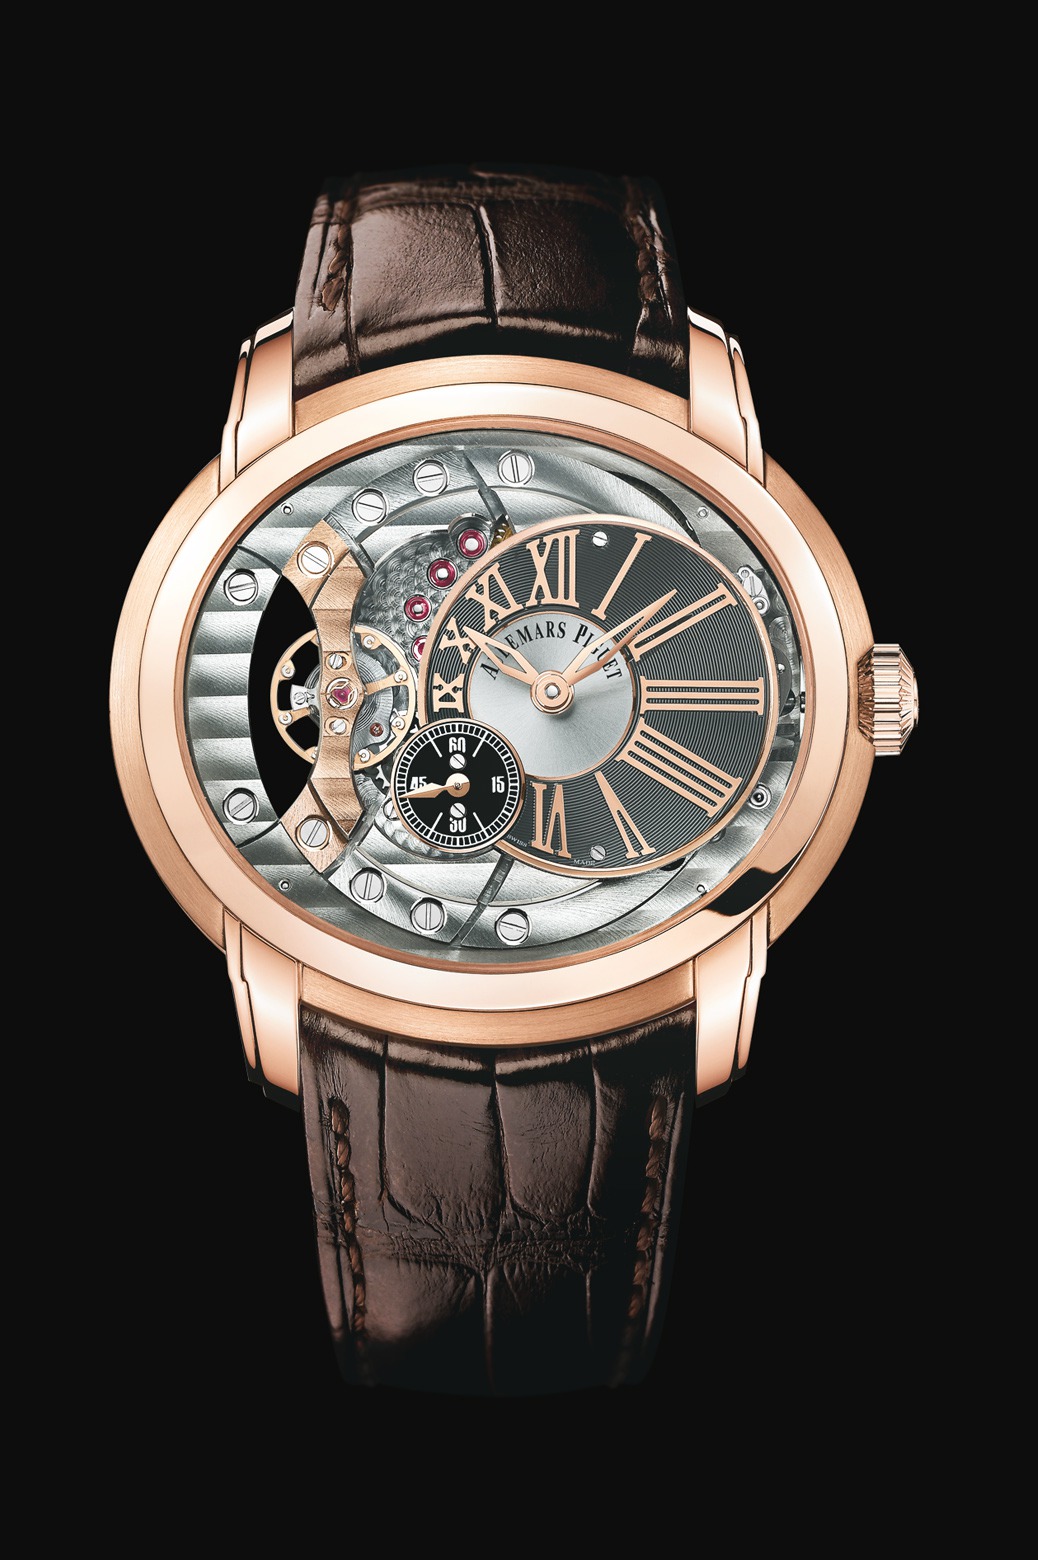 Audemars Piguet Millenary 4101 Pink Gold watch REF: 15350OR.OO.D093CR.01